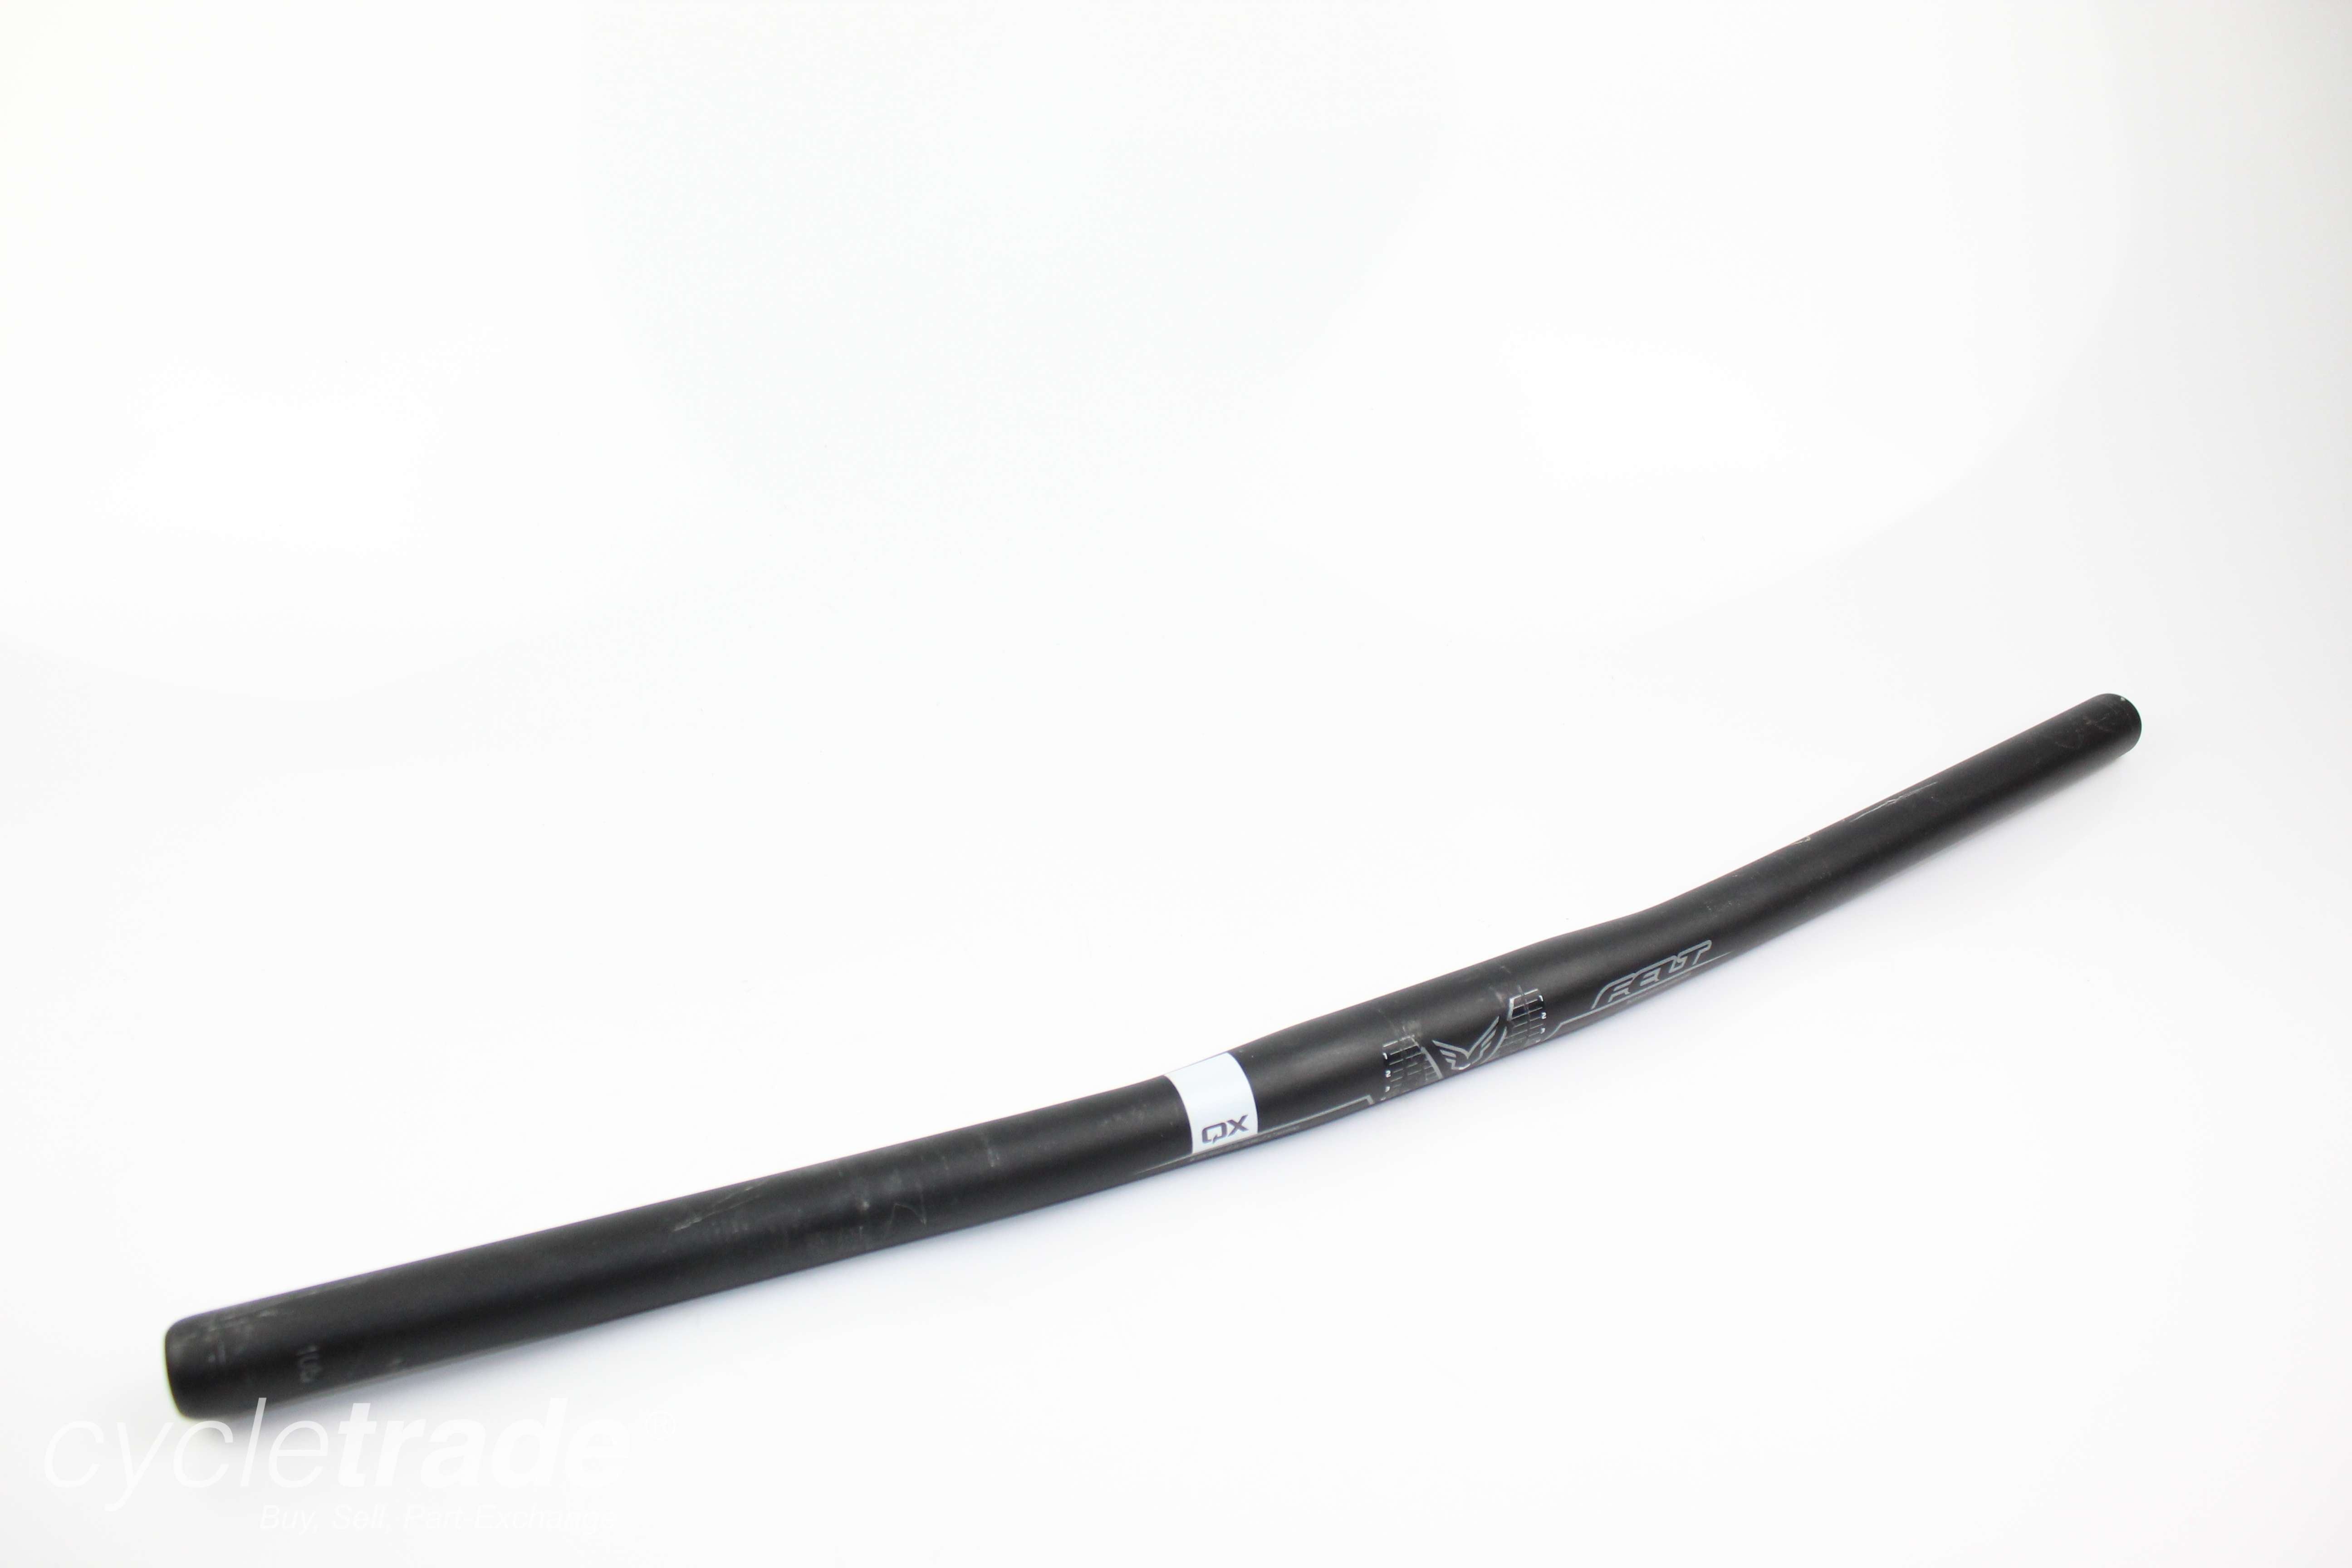 Flat Handlebars - Felt QX 605mm 25.4mm Clamp - Grade B